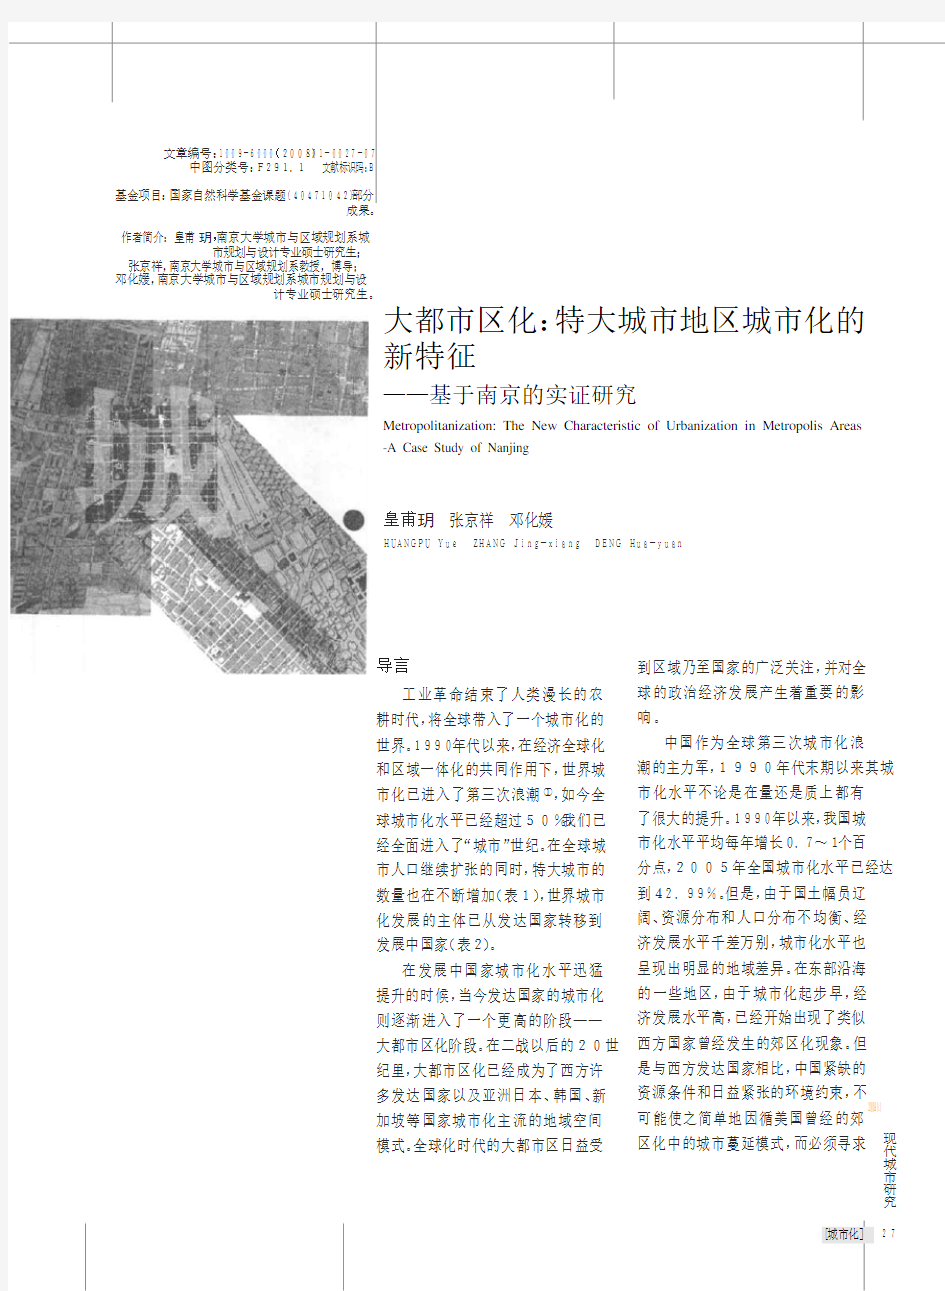 大都市区化_特大城市地区城市化的新特征_基于南京的实证研究